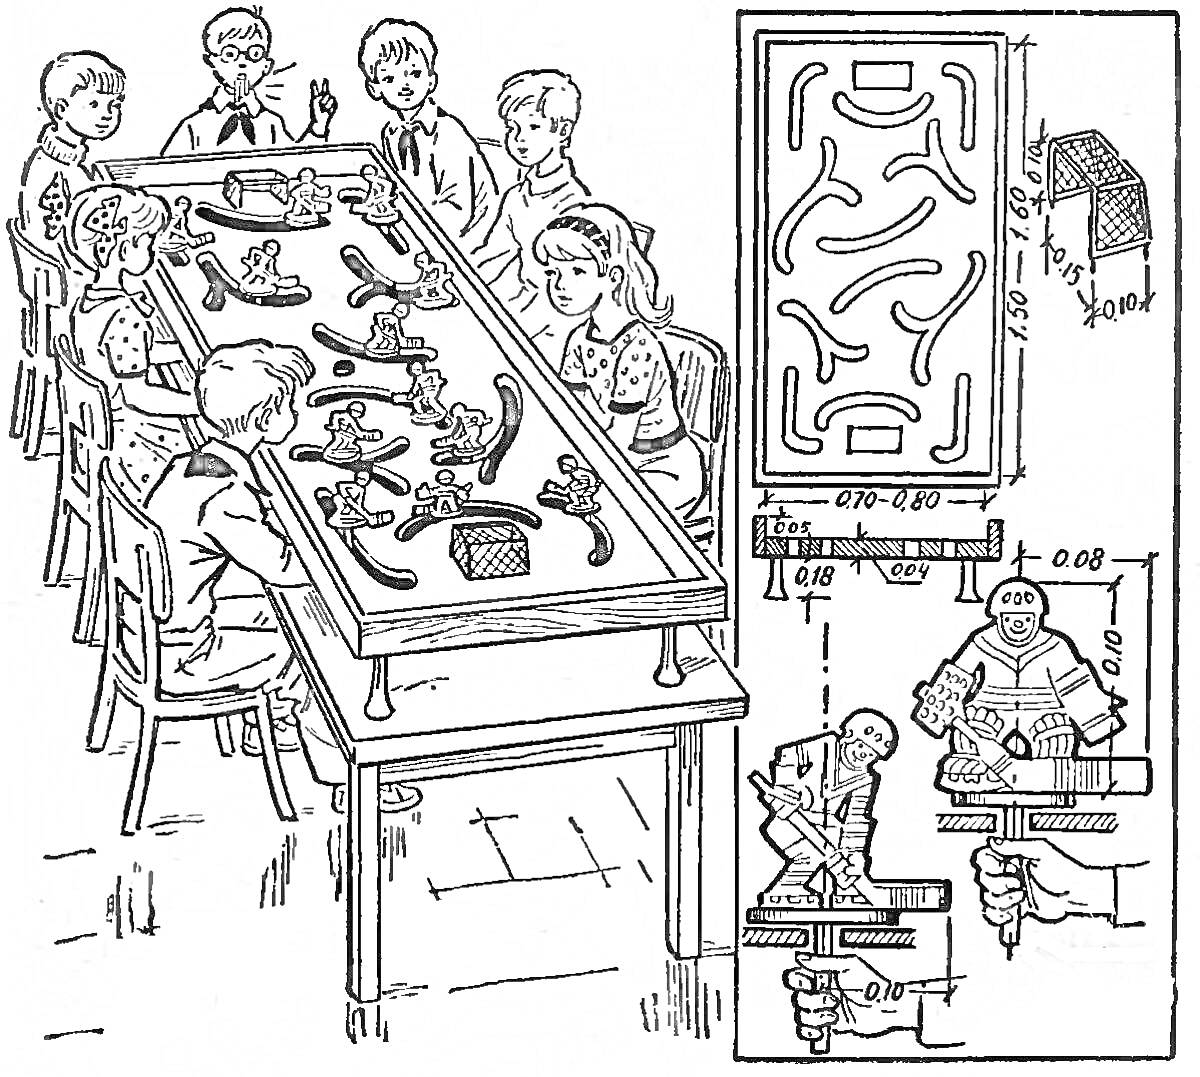 Дети играют за столом в настольную игру с фигурками и игровым полем, показывающим детали конструкции и элементов игры